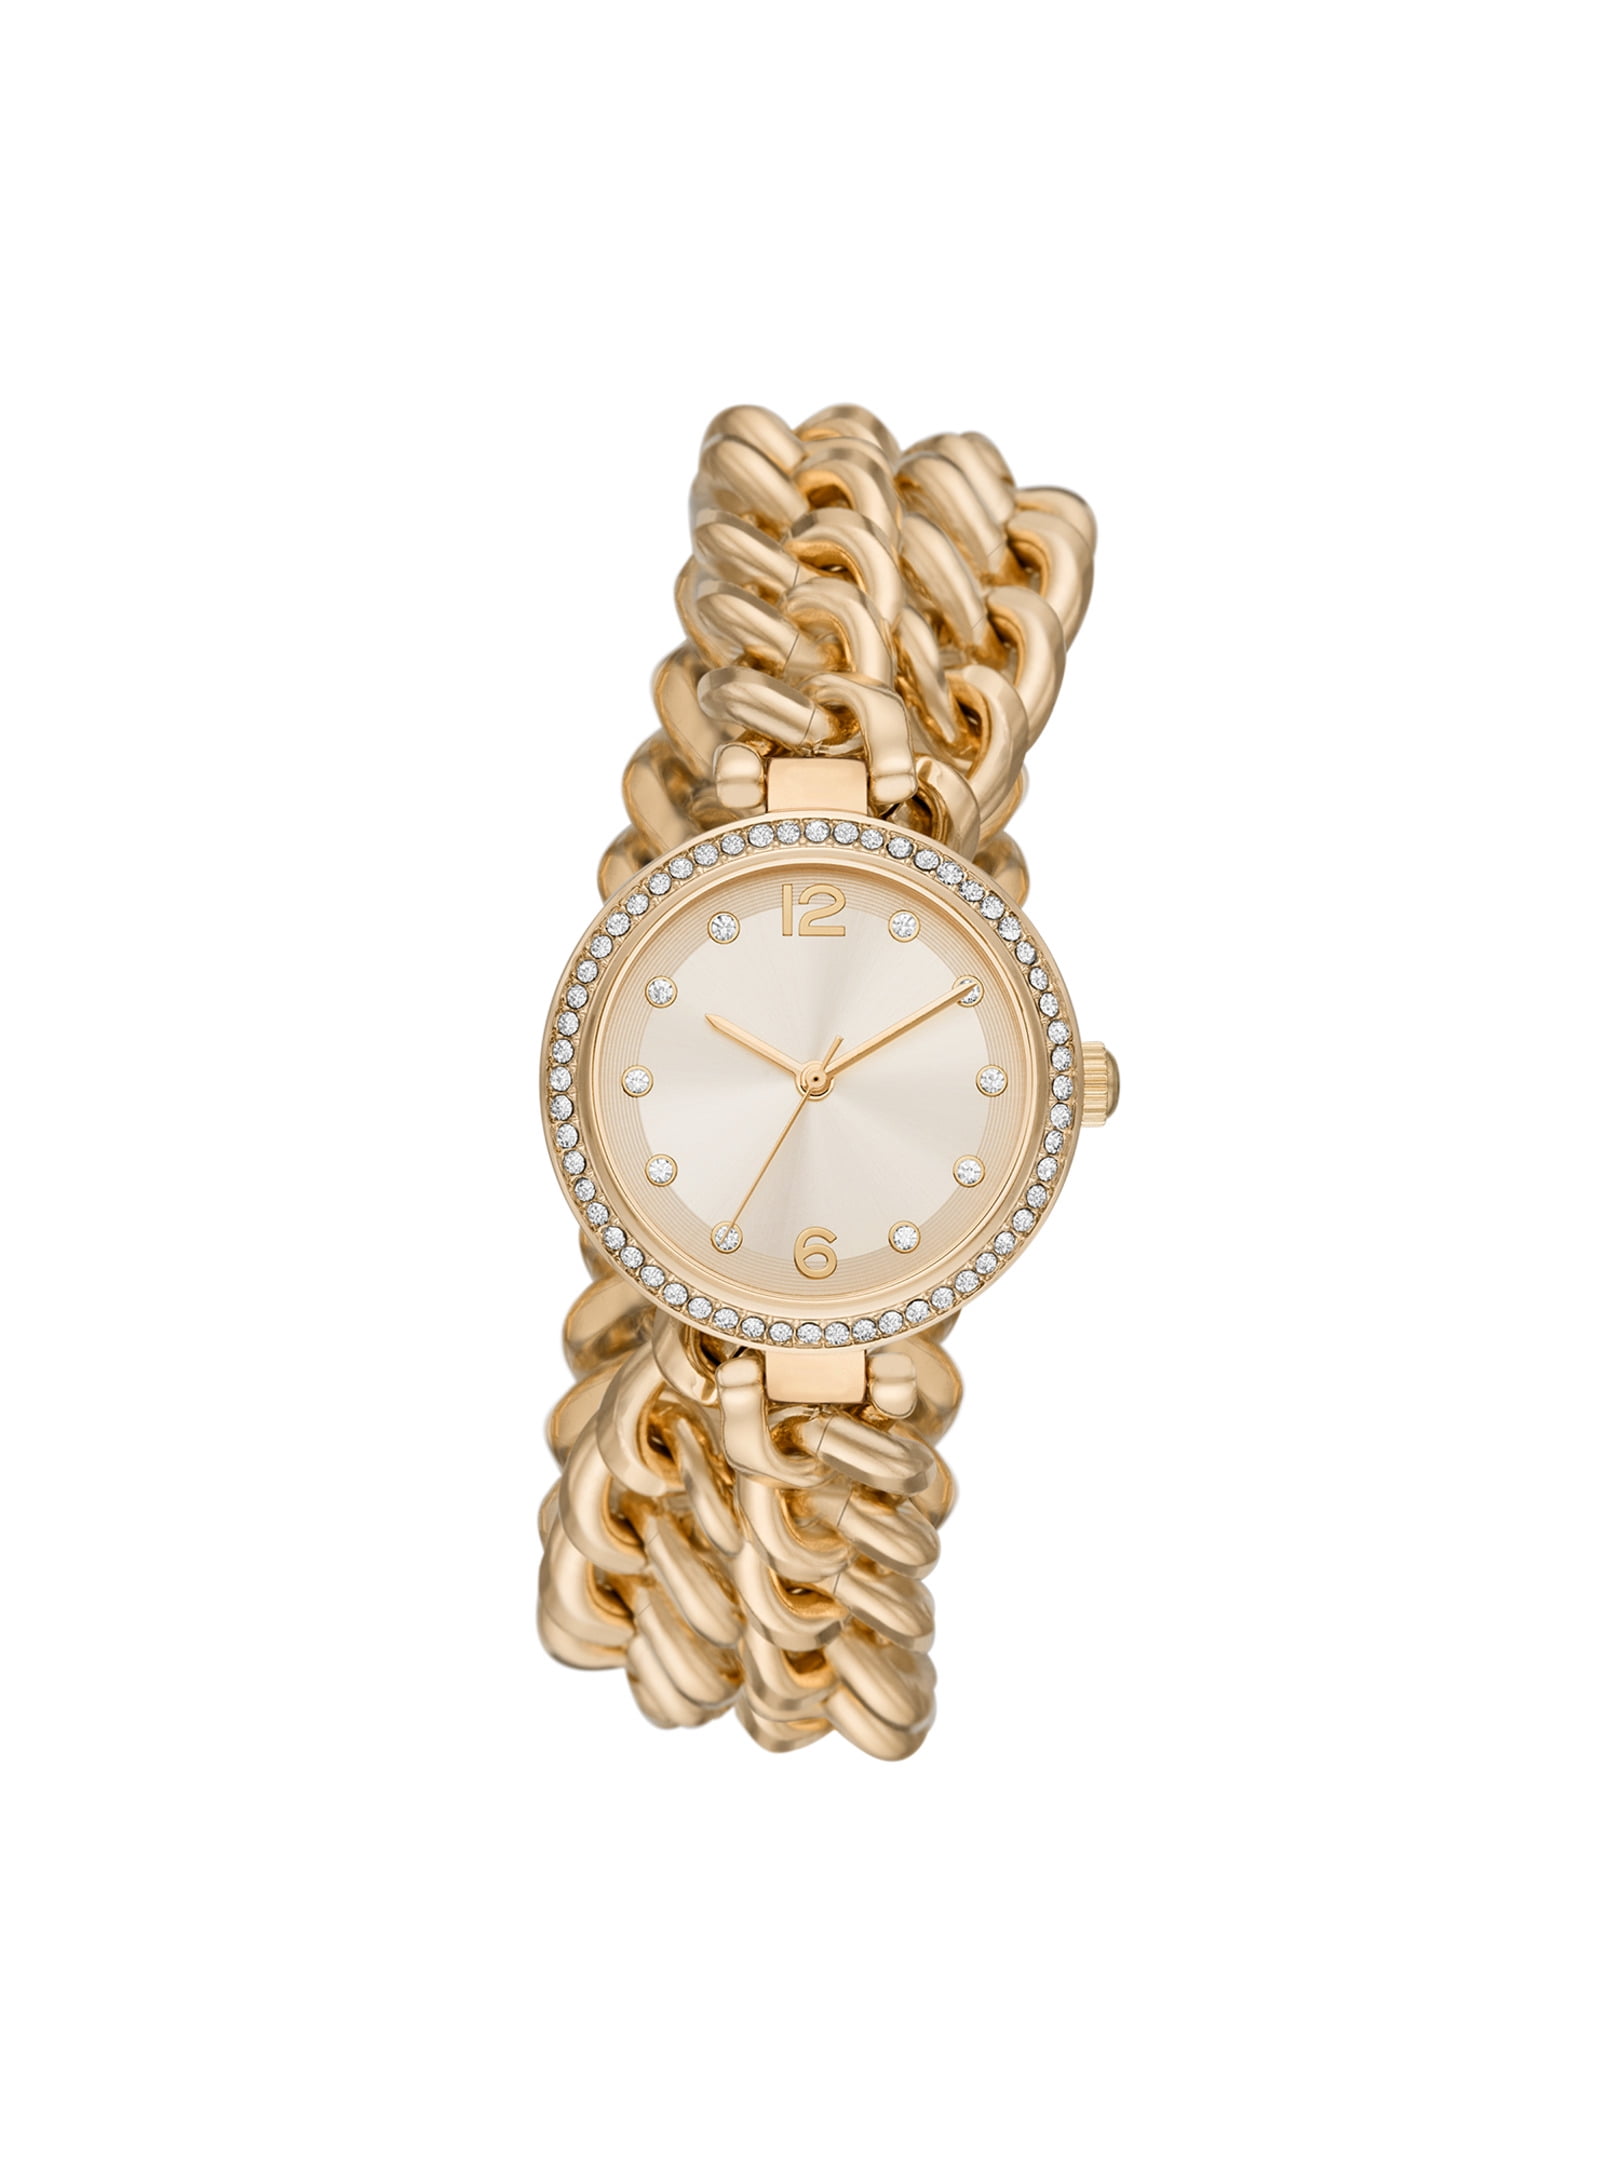 Carude WrapAround Swiss Watch Bracelet With Beige with Crystals  eBay